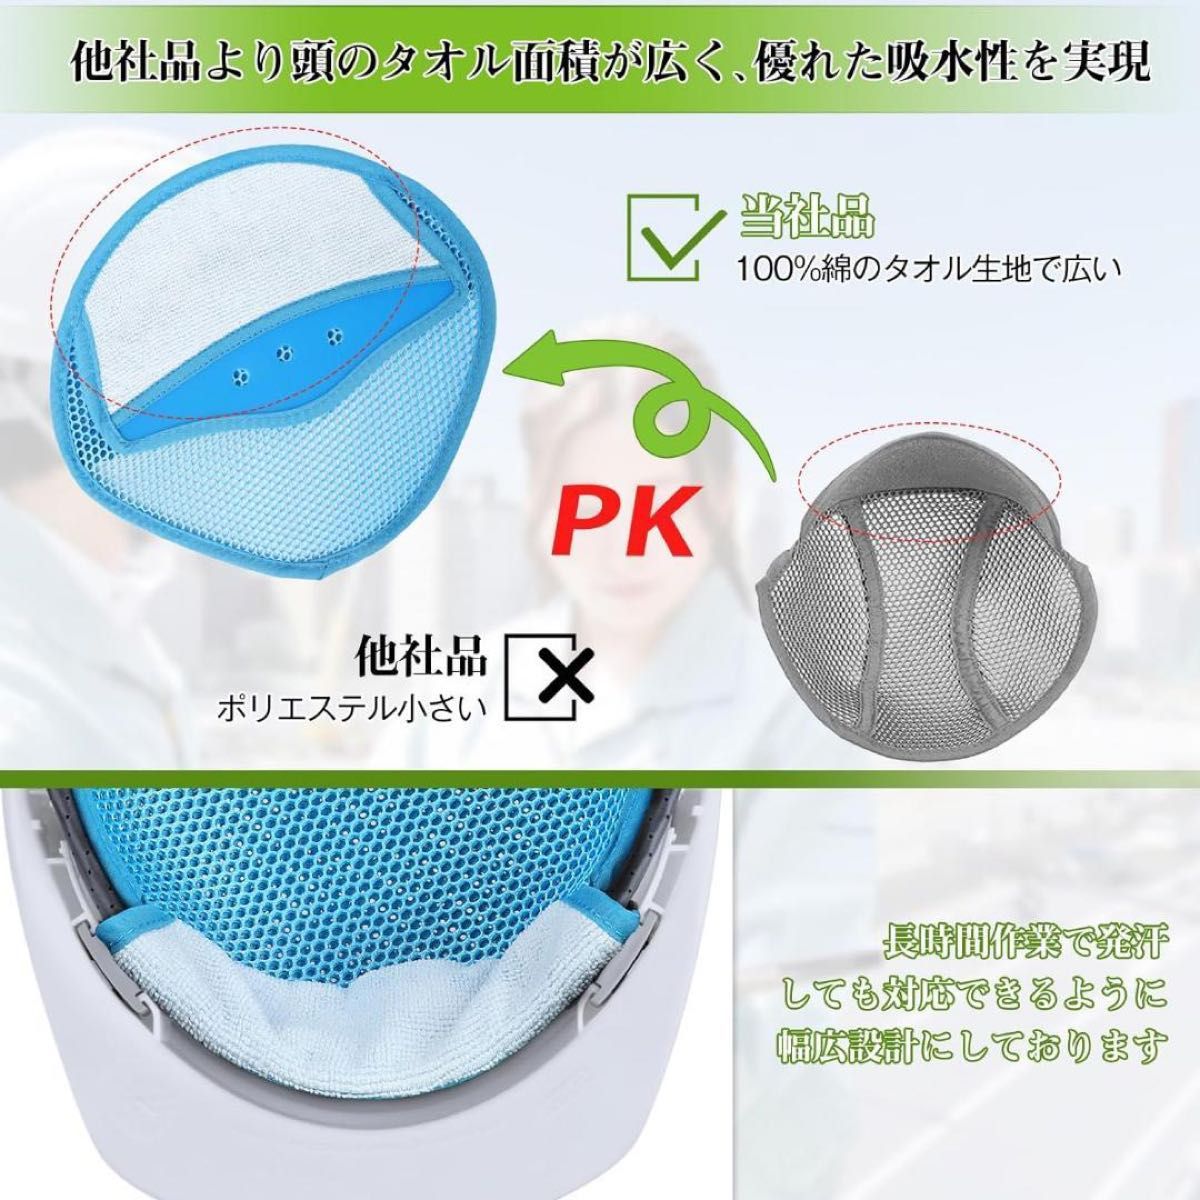 【5枚組】汗取り ヘルメット インナーキャップ 冷却グッズ 作業用 熱中症対策 汗対策 ムレ予防 ムレ対策 夏 厚さ